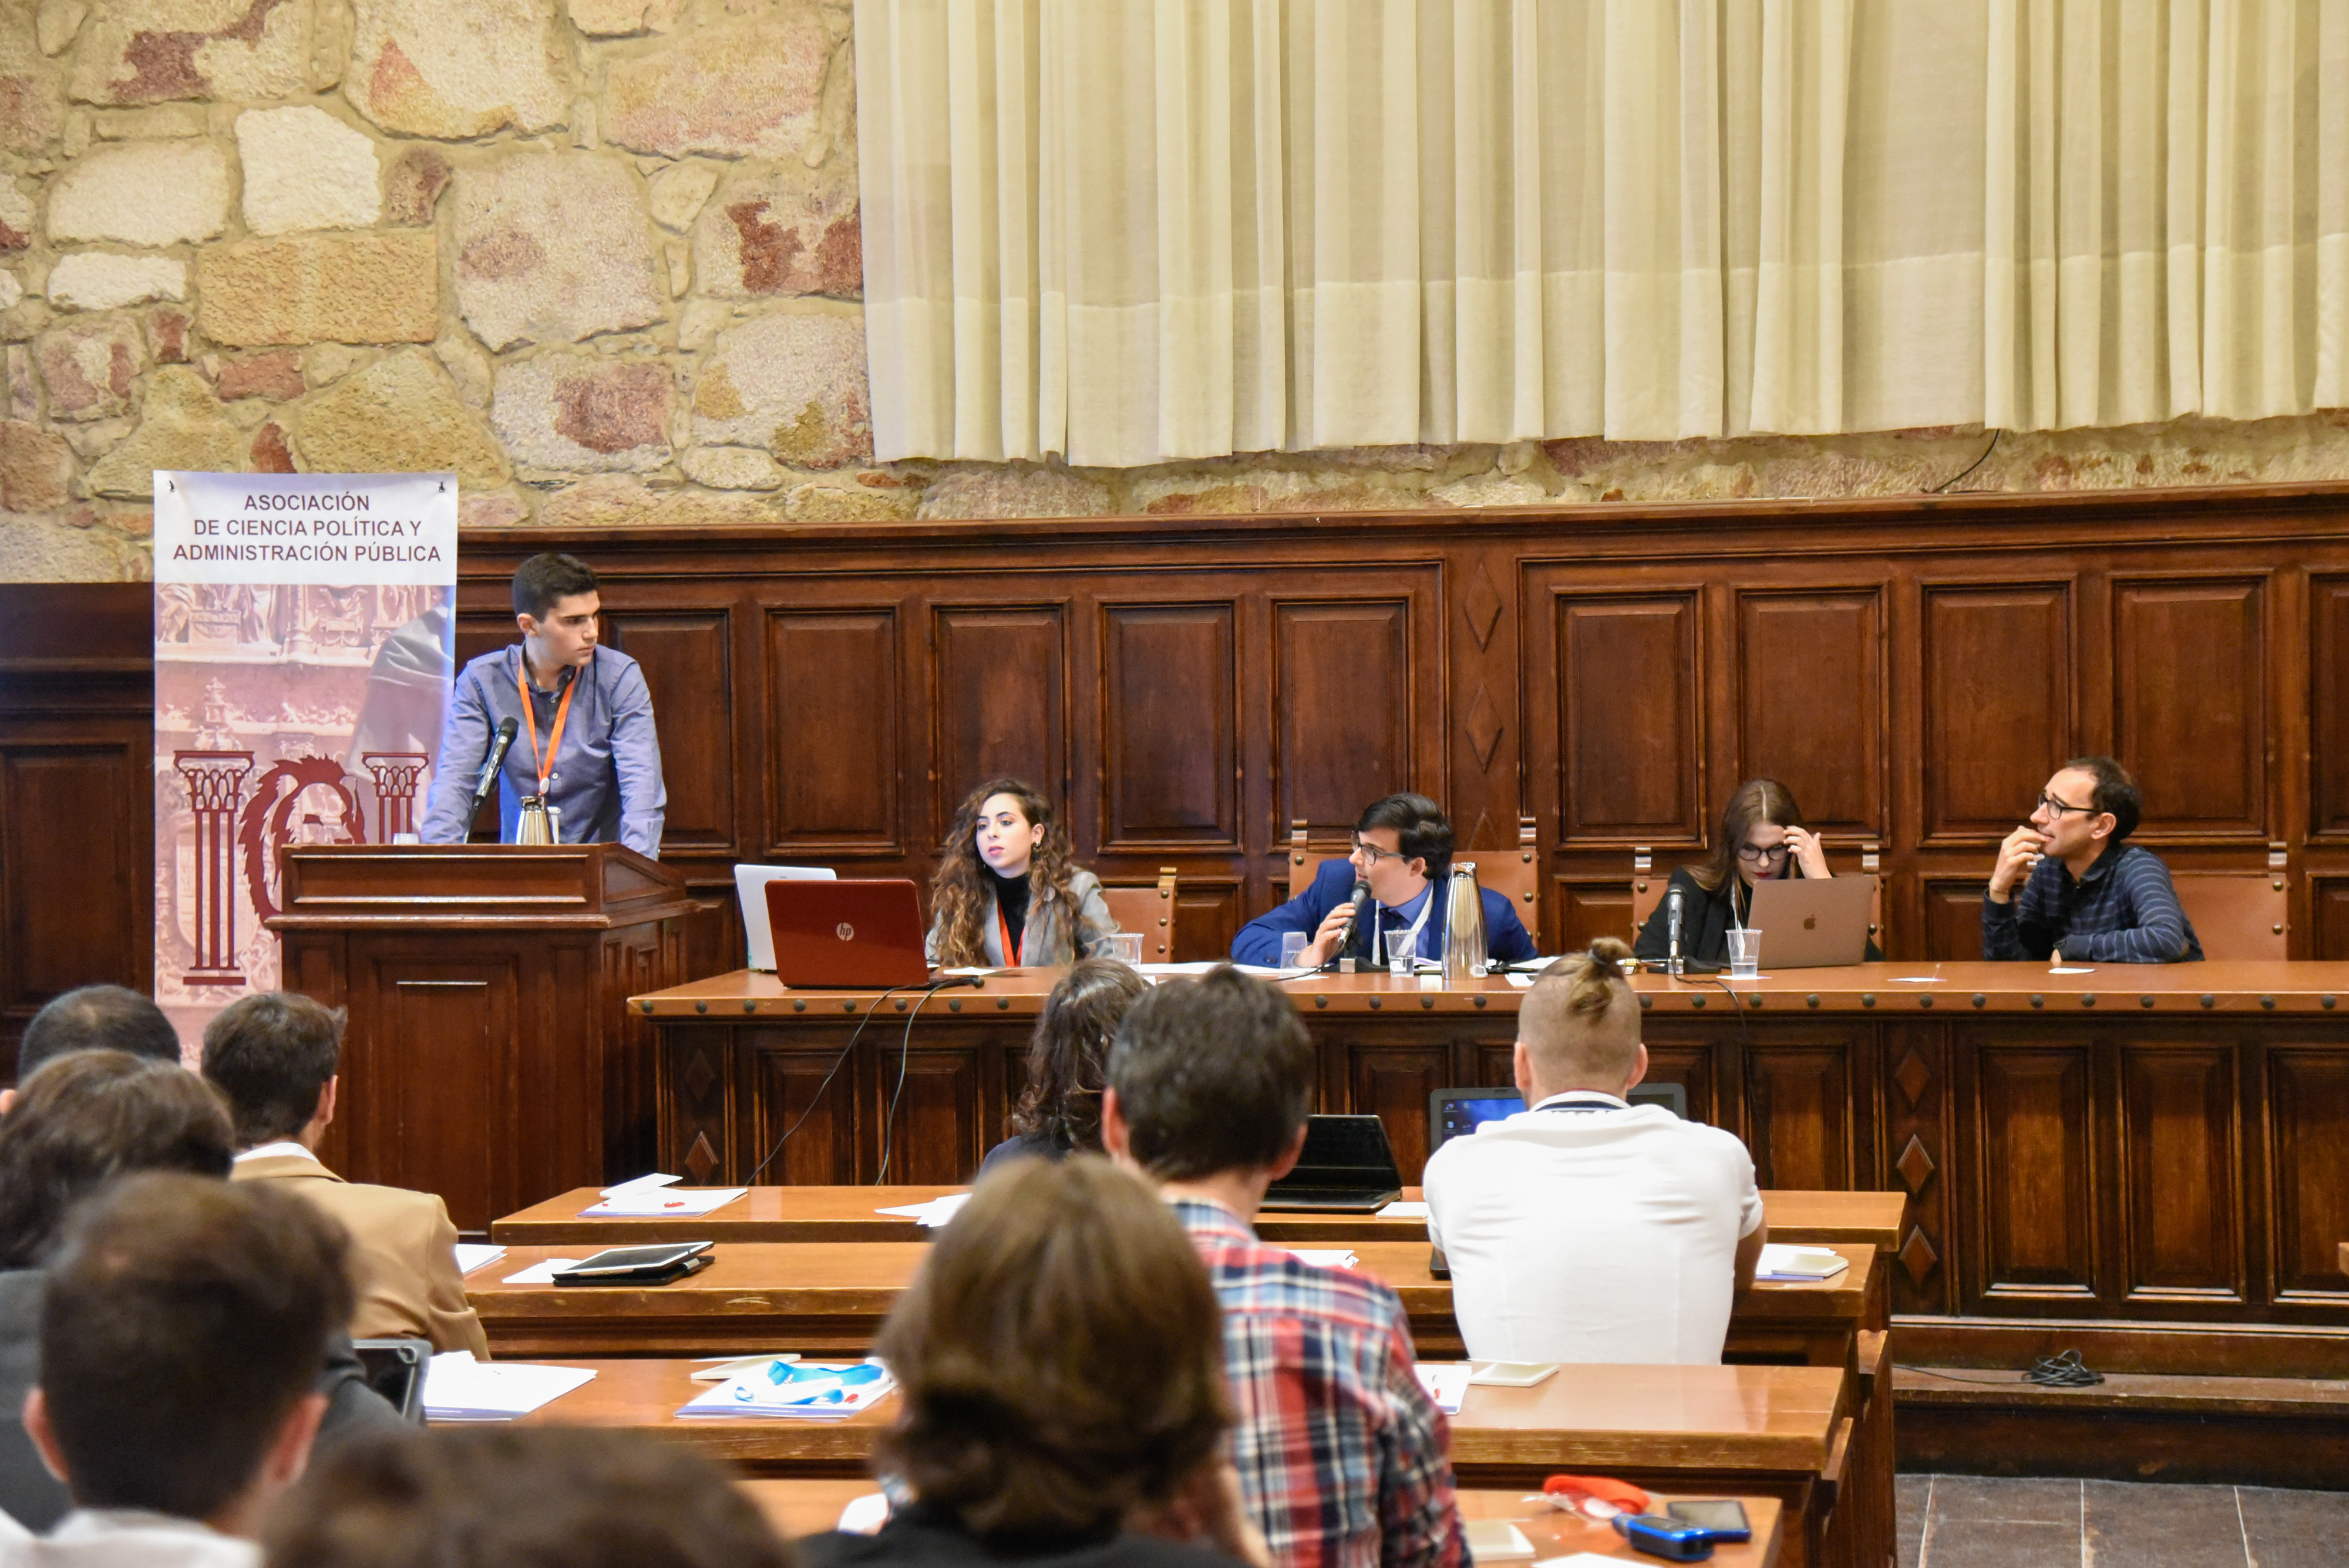 La Universidad de Salamanca celebra la II edición de su Simulación del Congreso de los Diputados (SICOD) con la participación de David Serrada y Encarnación Pérez Álvarez